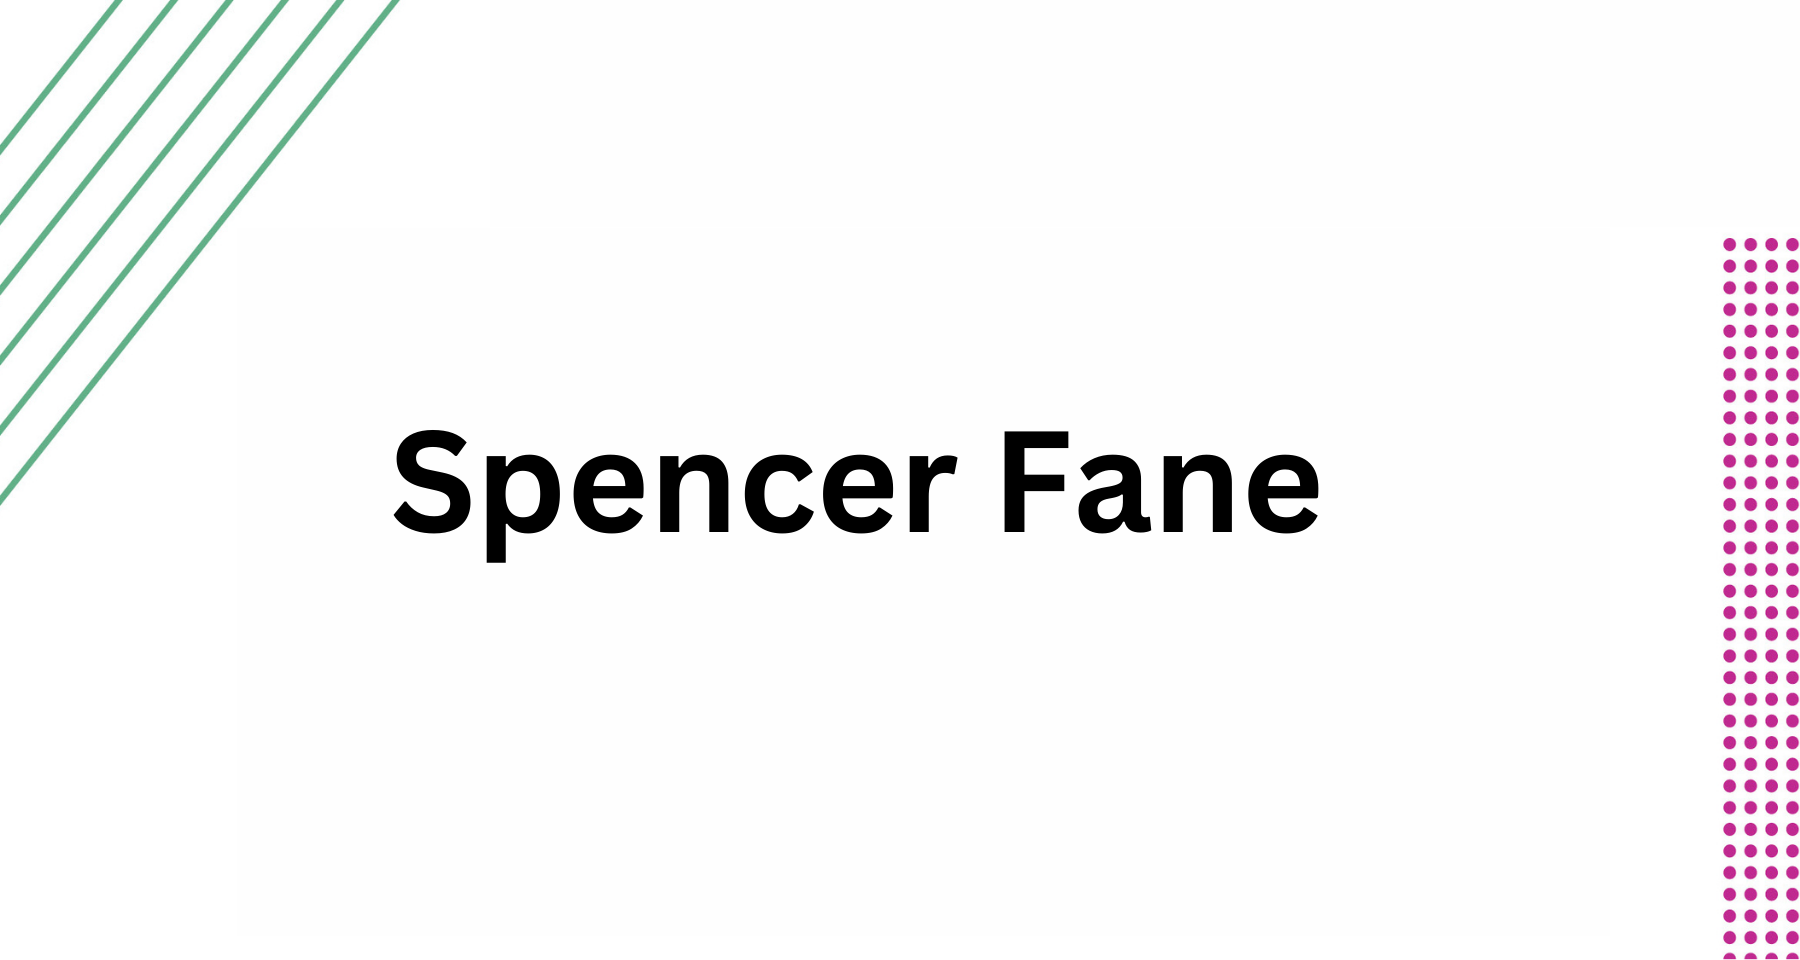 Spencer Fane